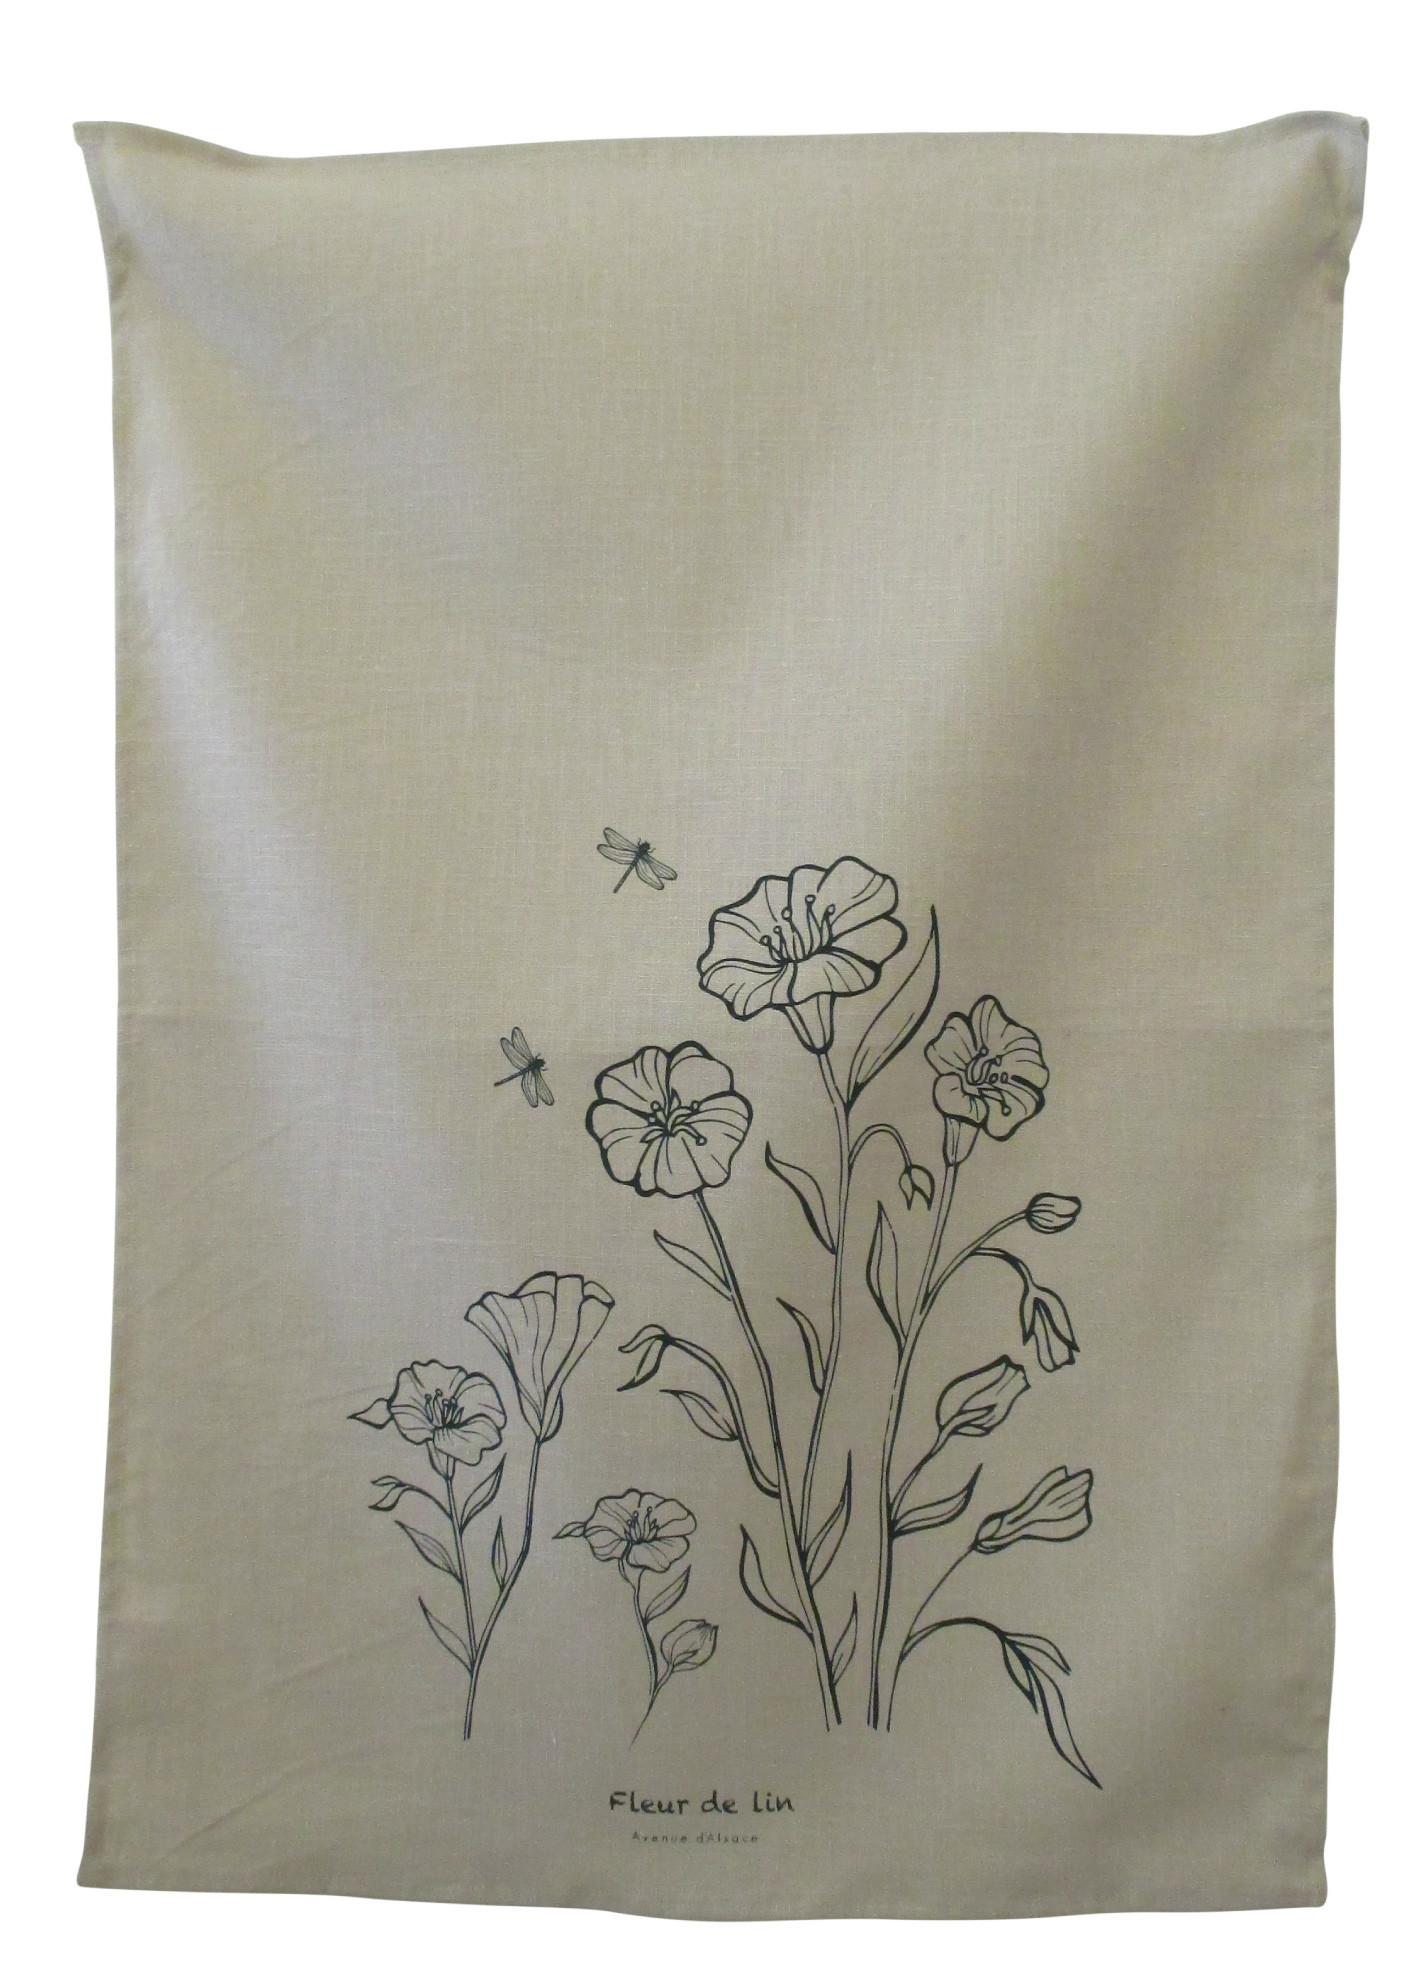 Visuel deTorchon français FLEUR DE LIN - Herbier Torchon imprimé de fleurs de lin sur fond blanc en ramie/coton